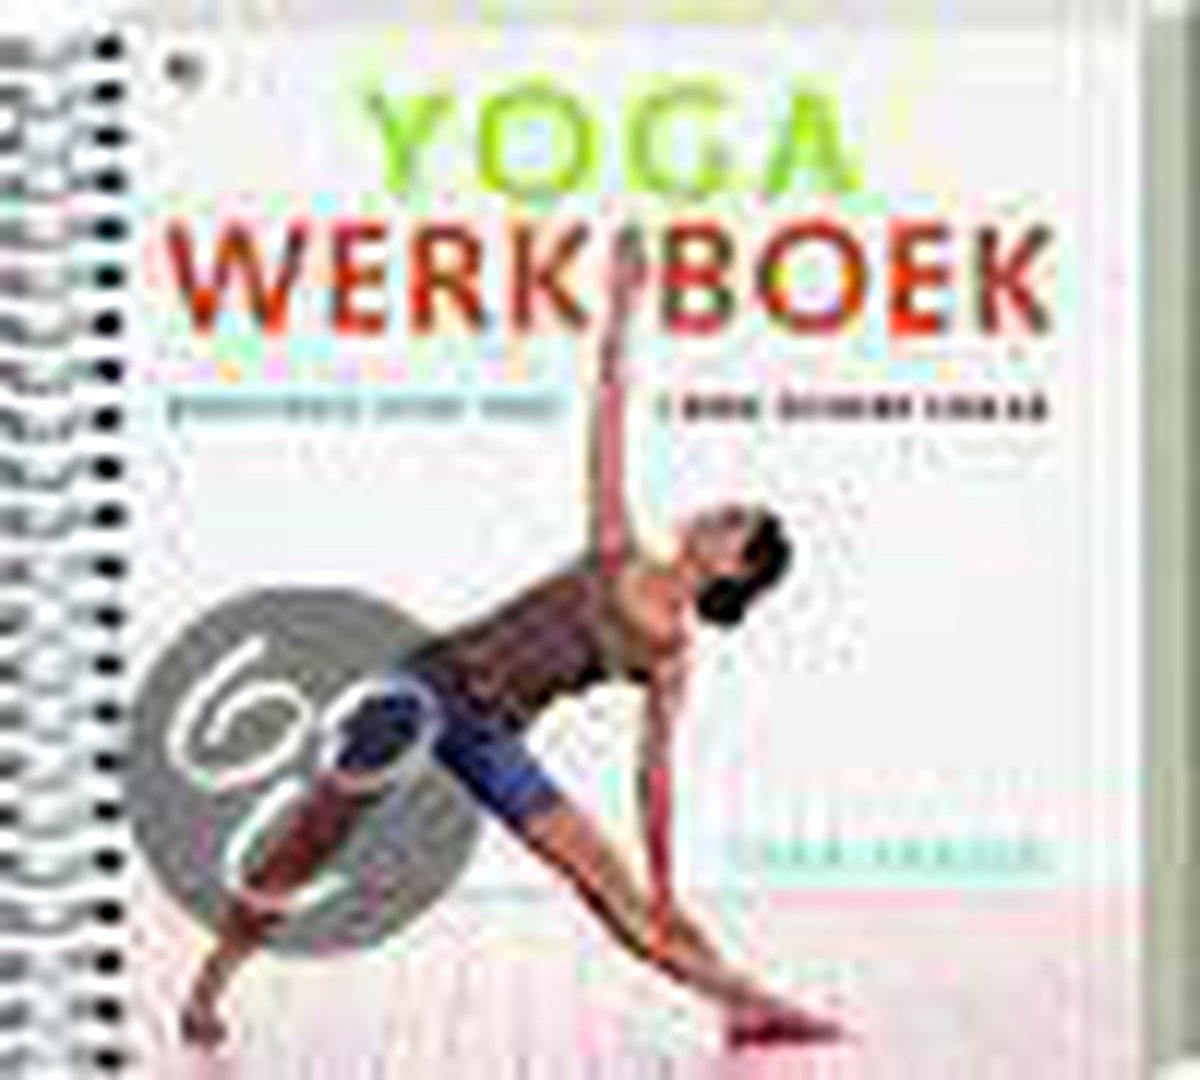 Yoga Werkboek